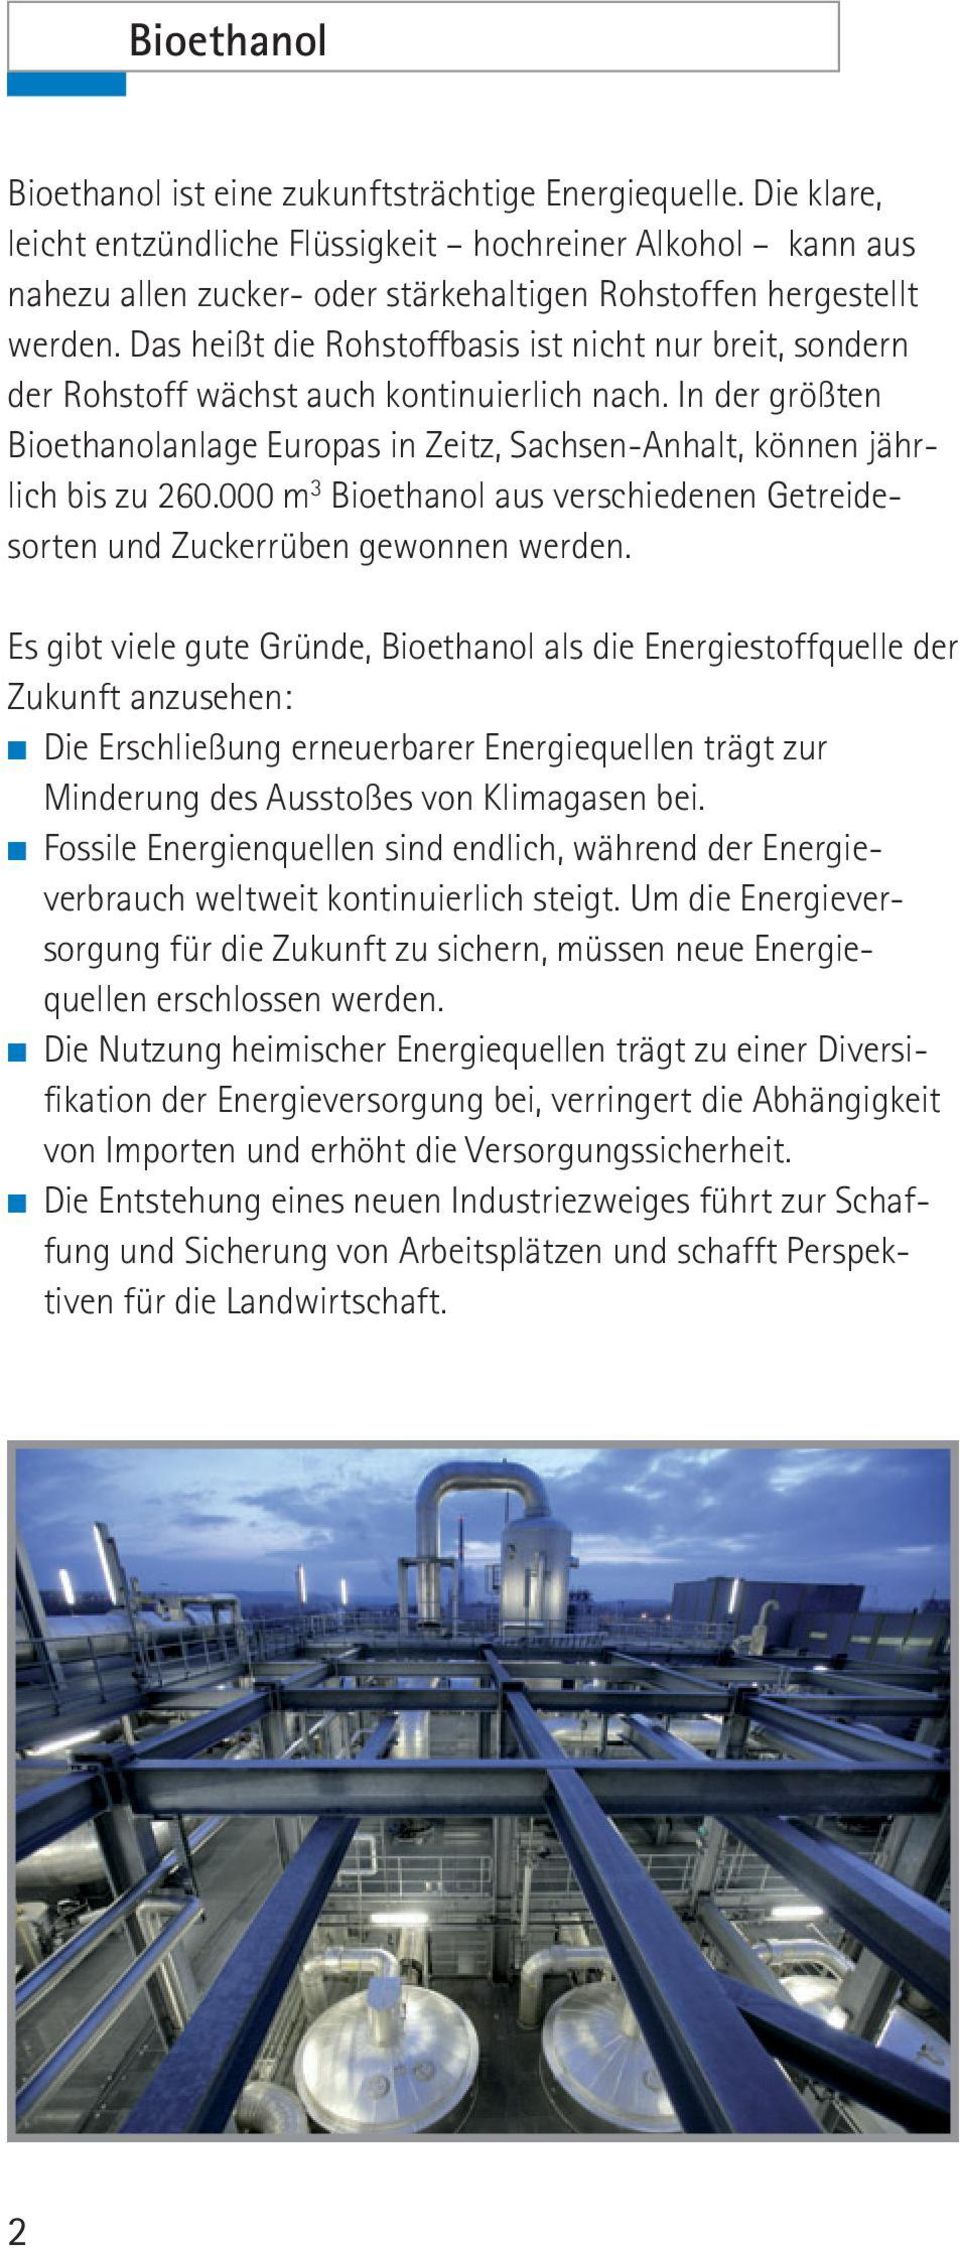 Das heißt die Rohstoffbasis ist nicht nur breit, sondern der Rohstoff wächst auch kontinuierlich nach. In der größten Bioethanolanlage Europas in Zeitz, Sachsen-Anhalt, können jährlich bis zu 260.